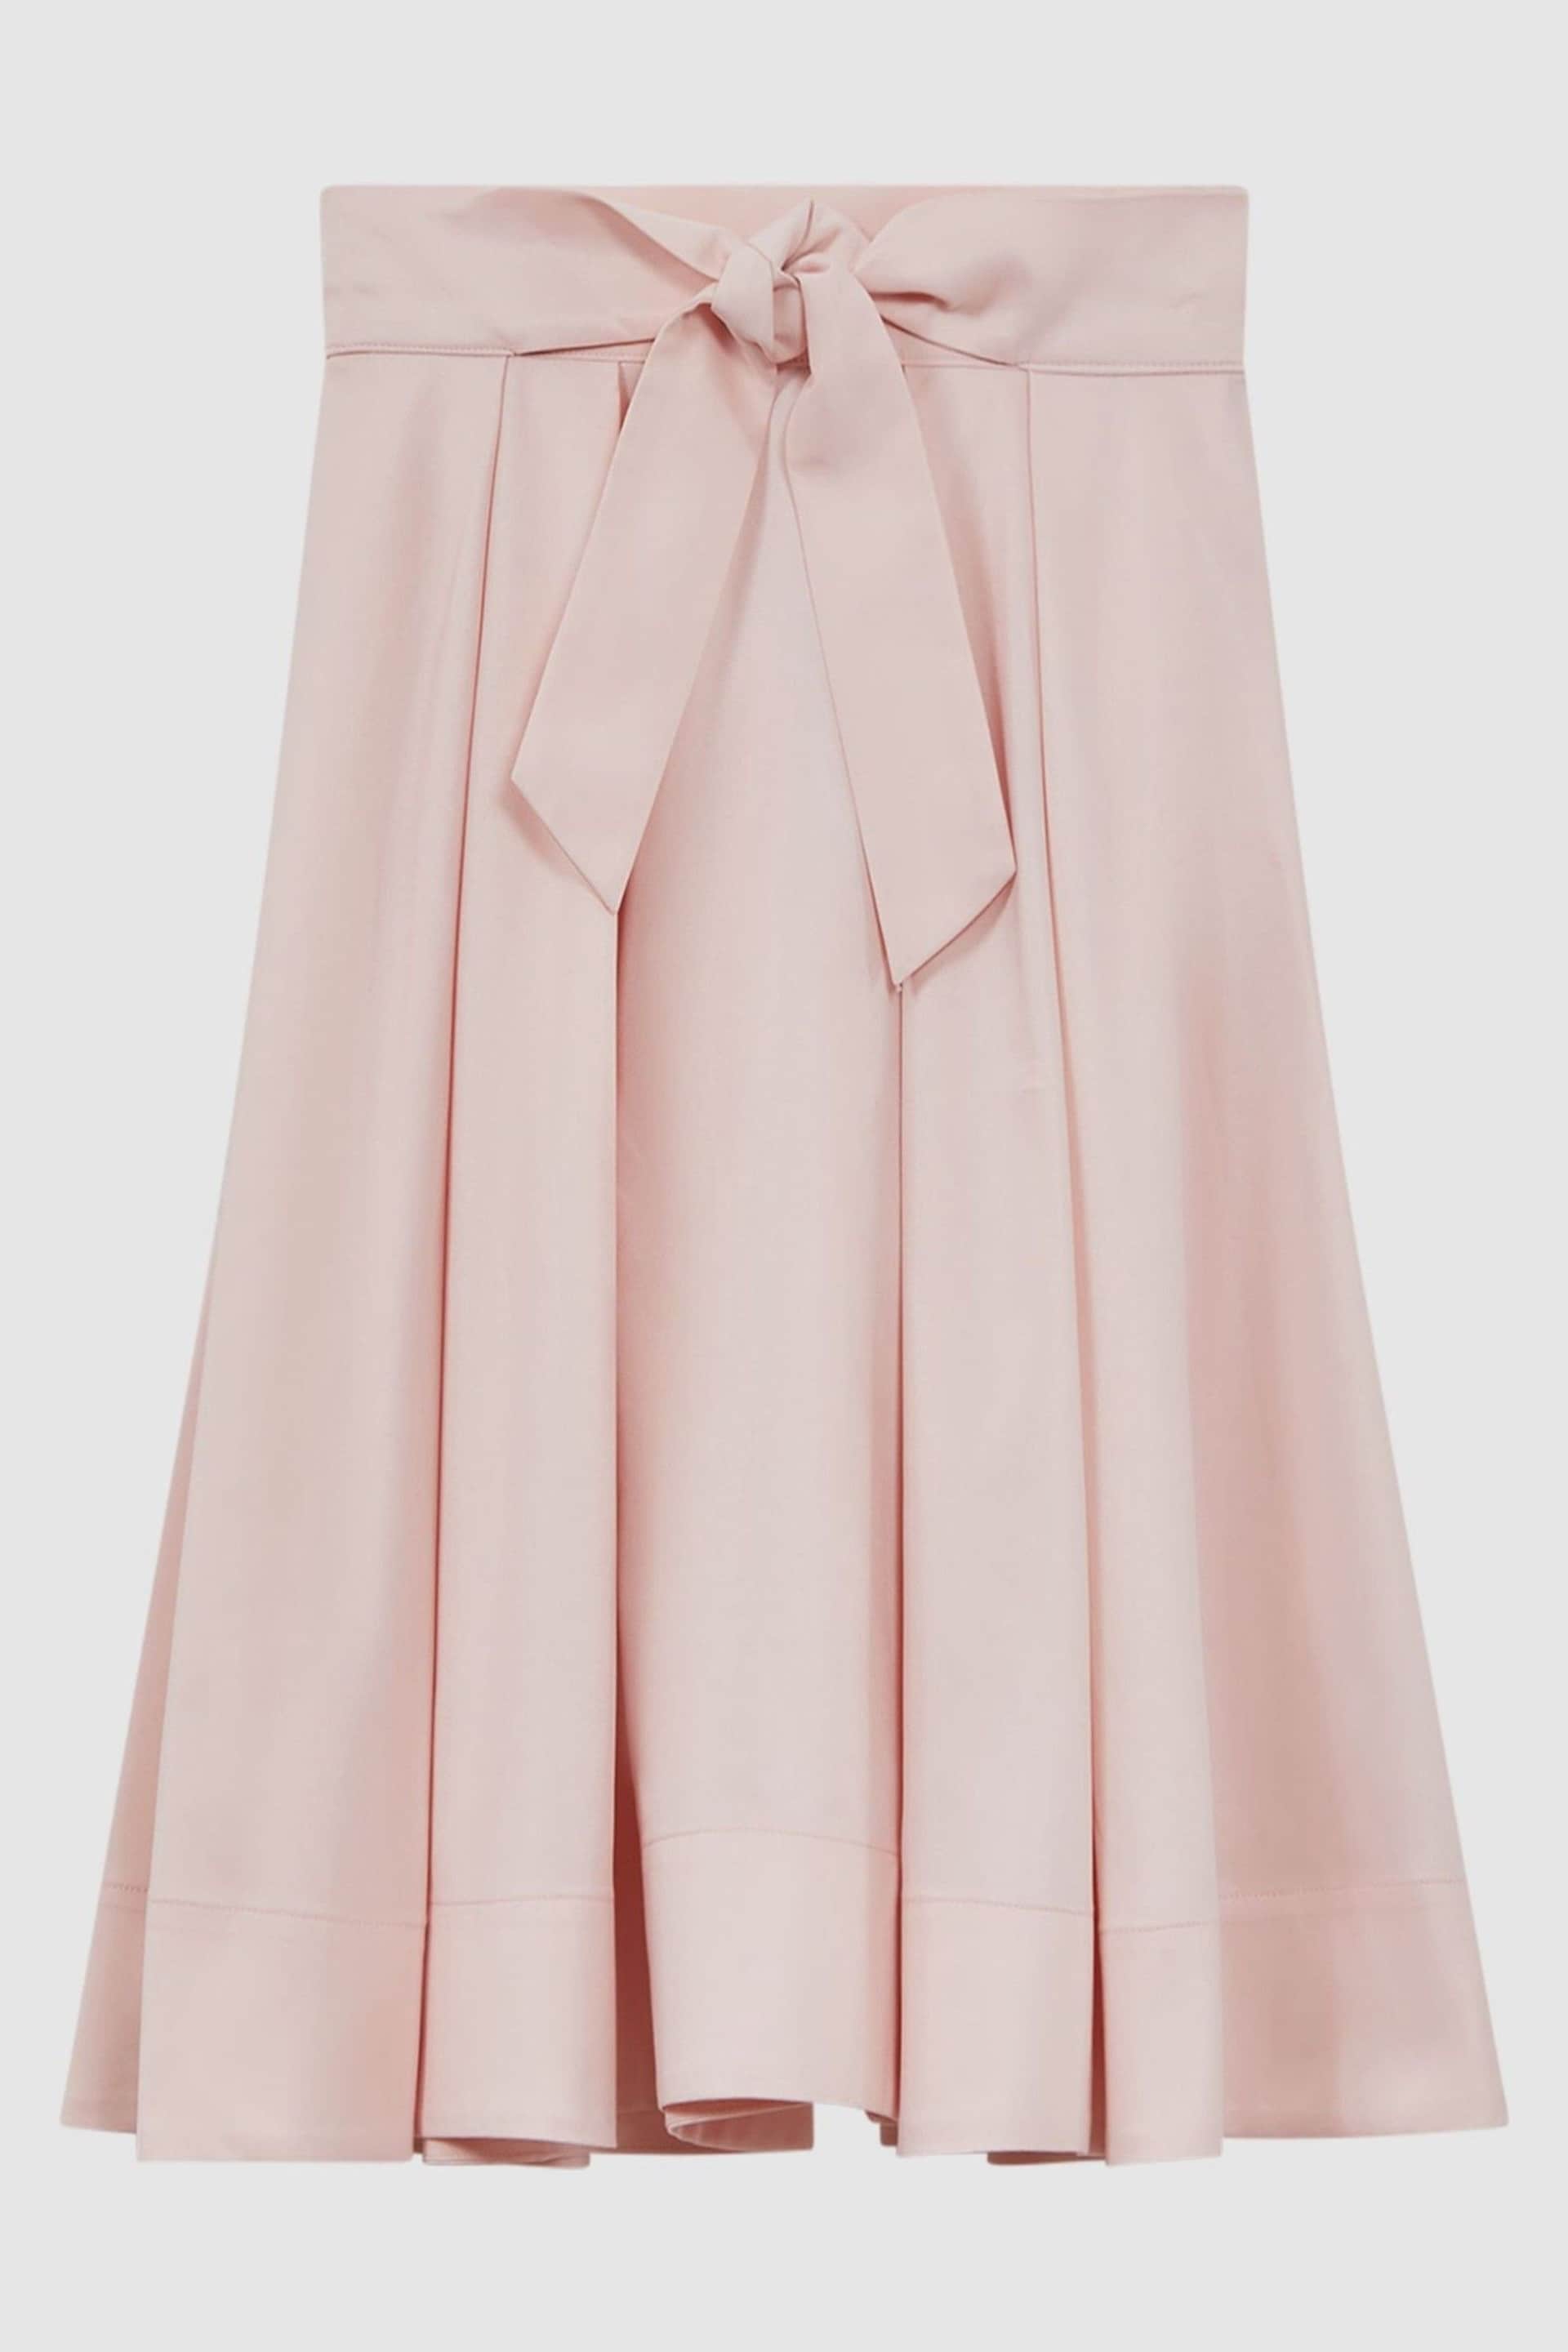 Reiss Pink Garcia Senior Pleated Belted Taffeta Midi Skirt - Image 2 of 6